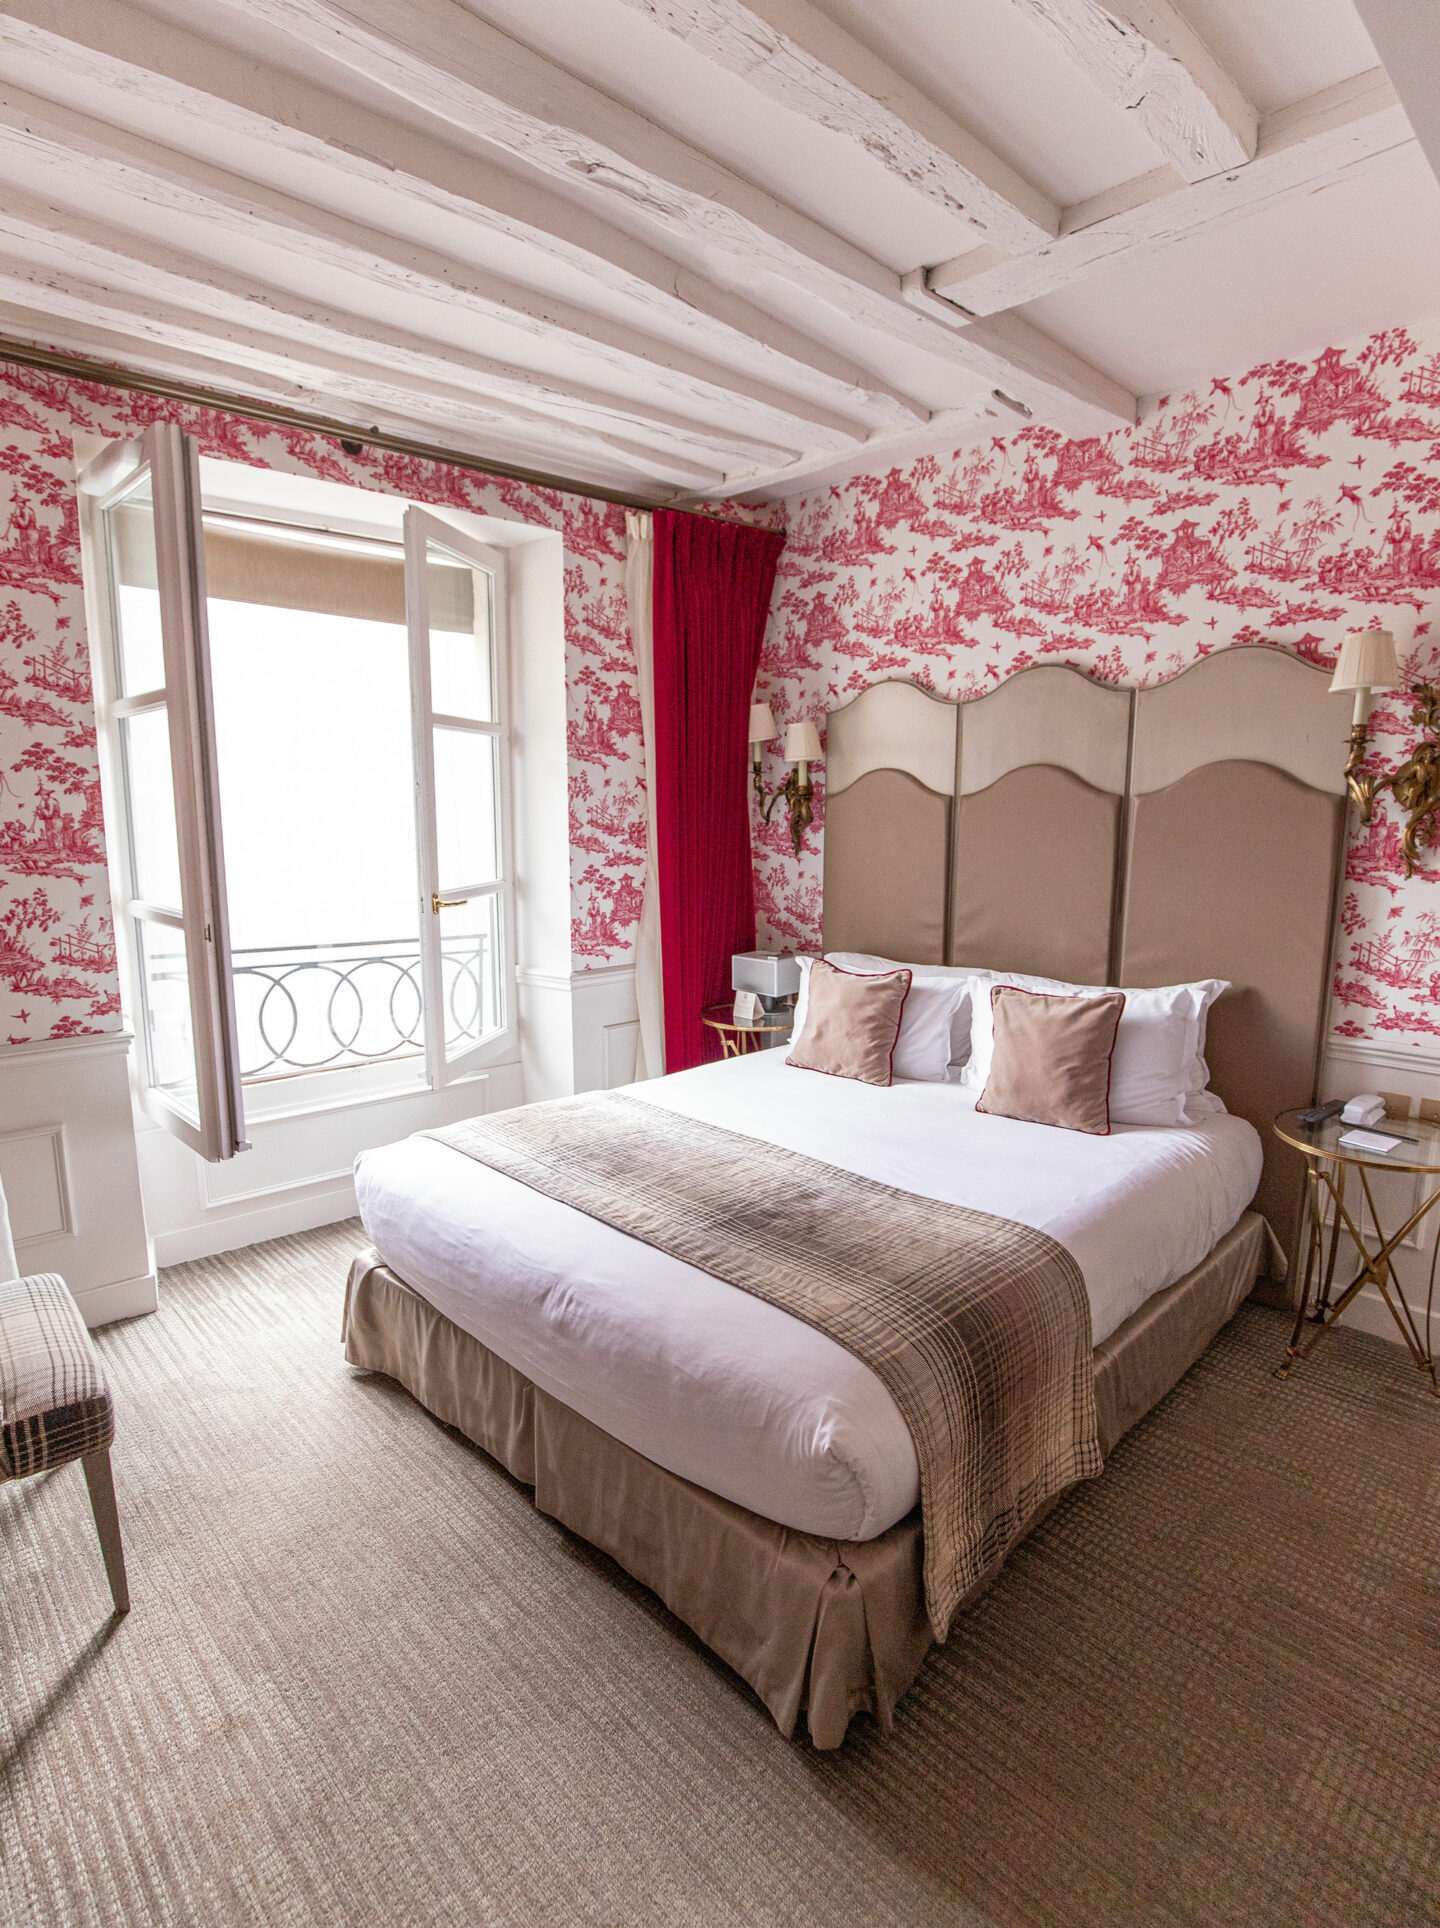 9-best-hotels-in-paris-where-to-stay-in-paris-paris-boutique-hotel-la-maison-favart-kelsey-heinrichs-kelseyinlondon